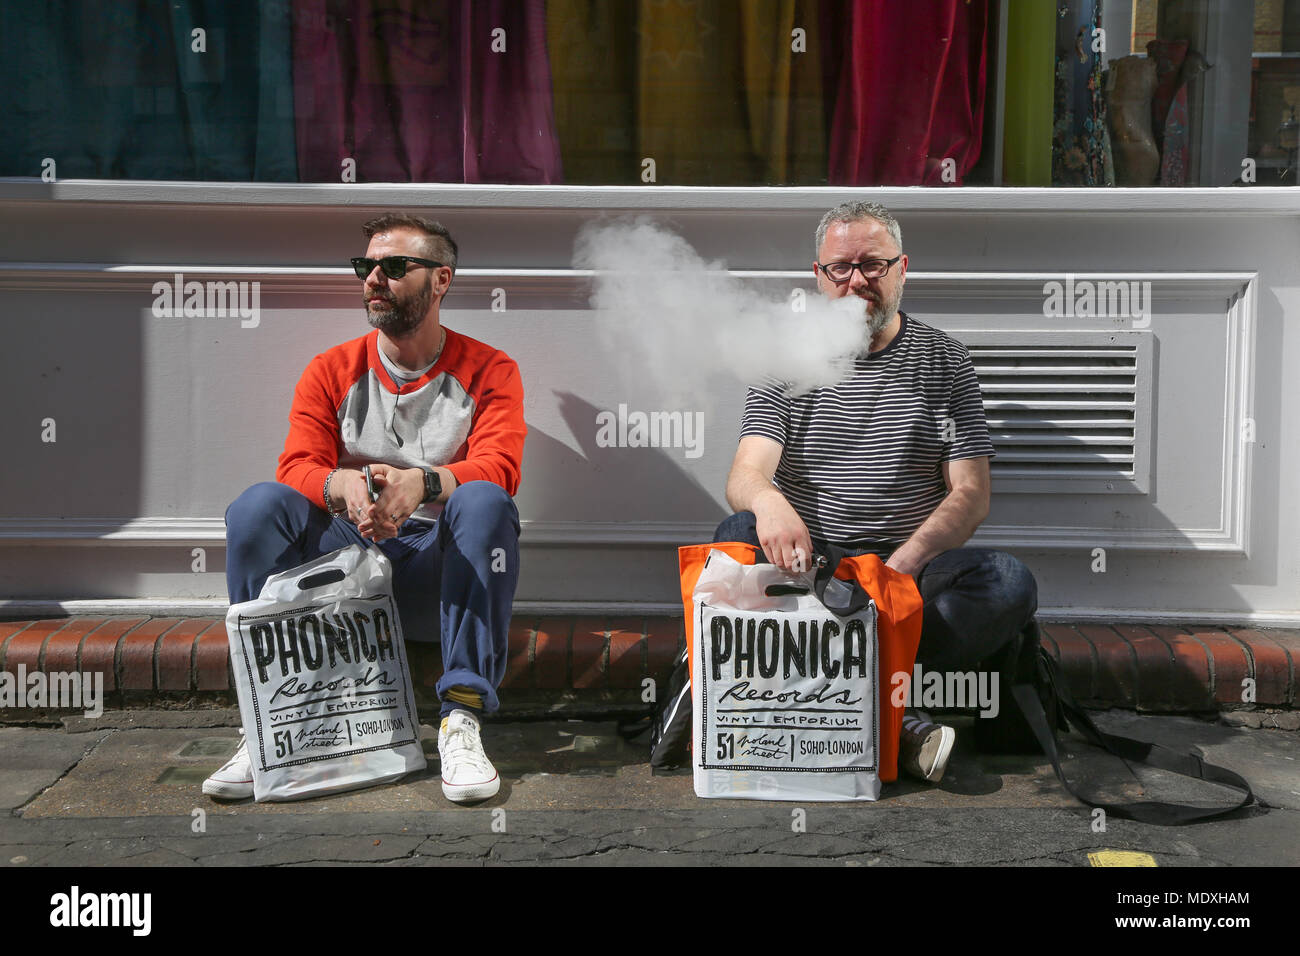 Londres, Royaume-Uni. 21 avril, 2018. Deux hommes assis sur le trottoir avec des achats sur record shop, jim forrest@alamy live news Crédit : jim forrest/Alamy Live News Banque D'Images